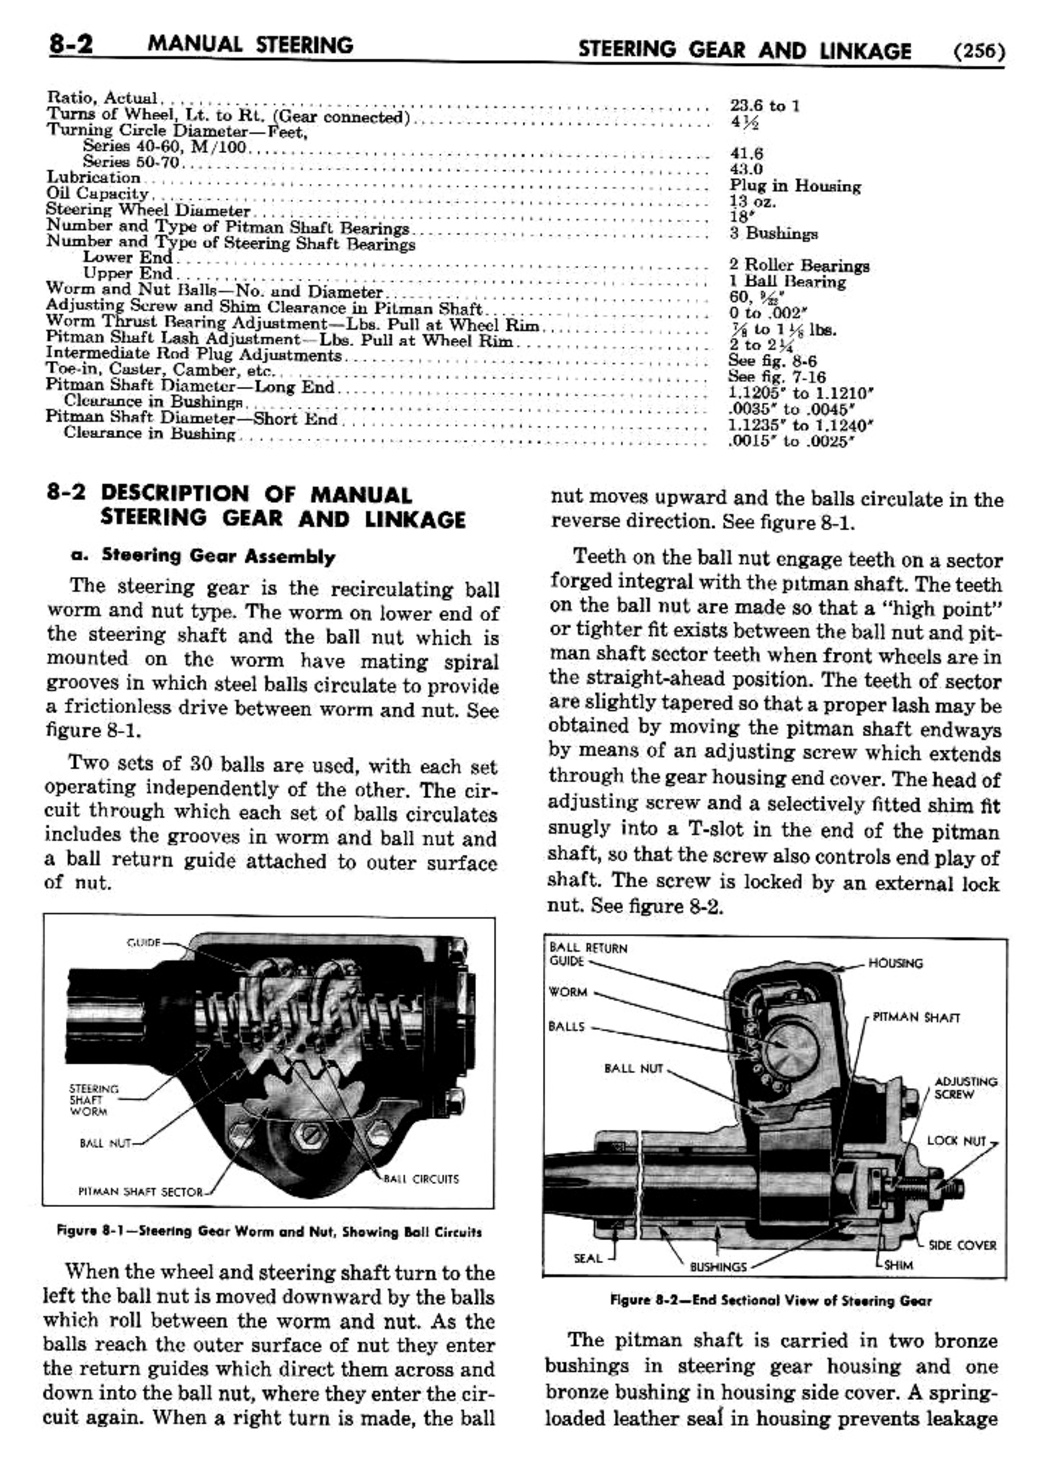 n_09 1954 Buick Shop Manual - Steering-002-002.jpg